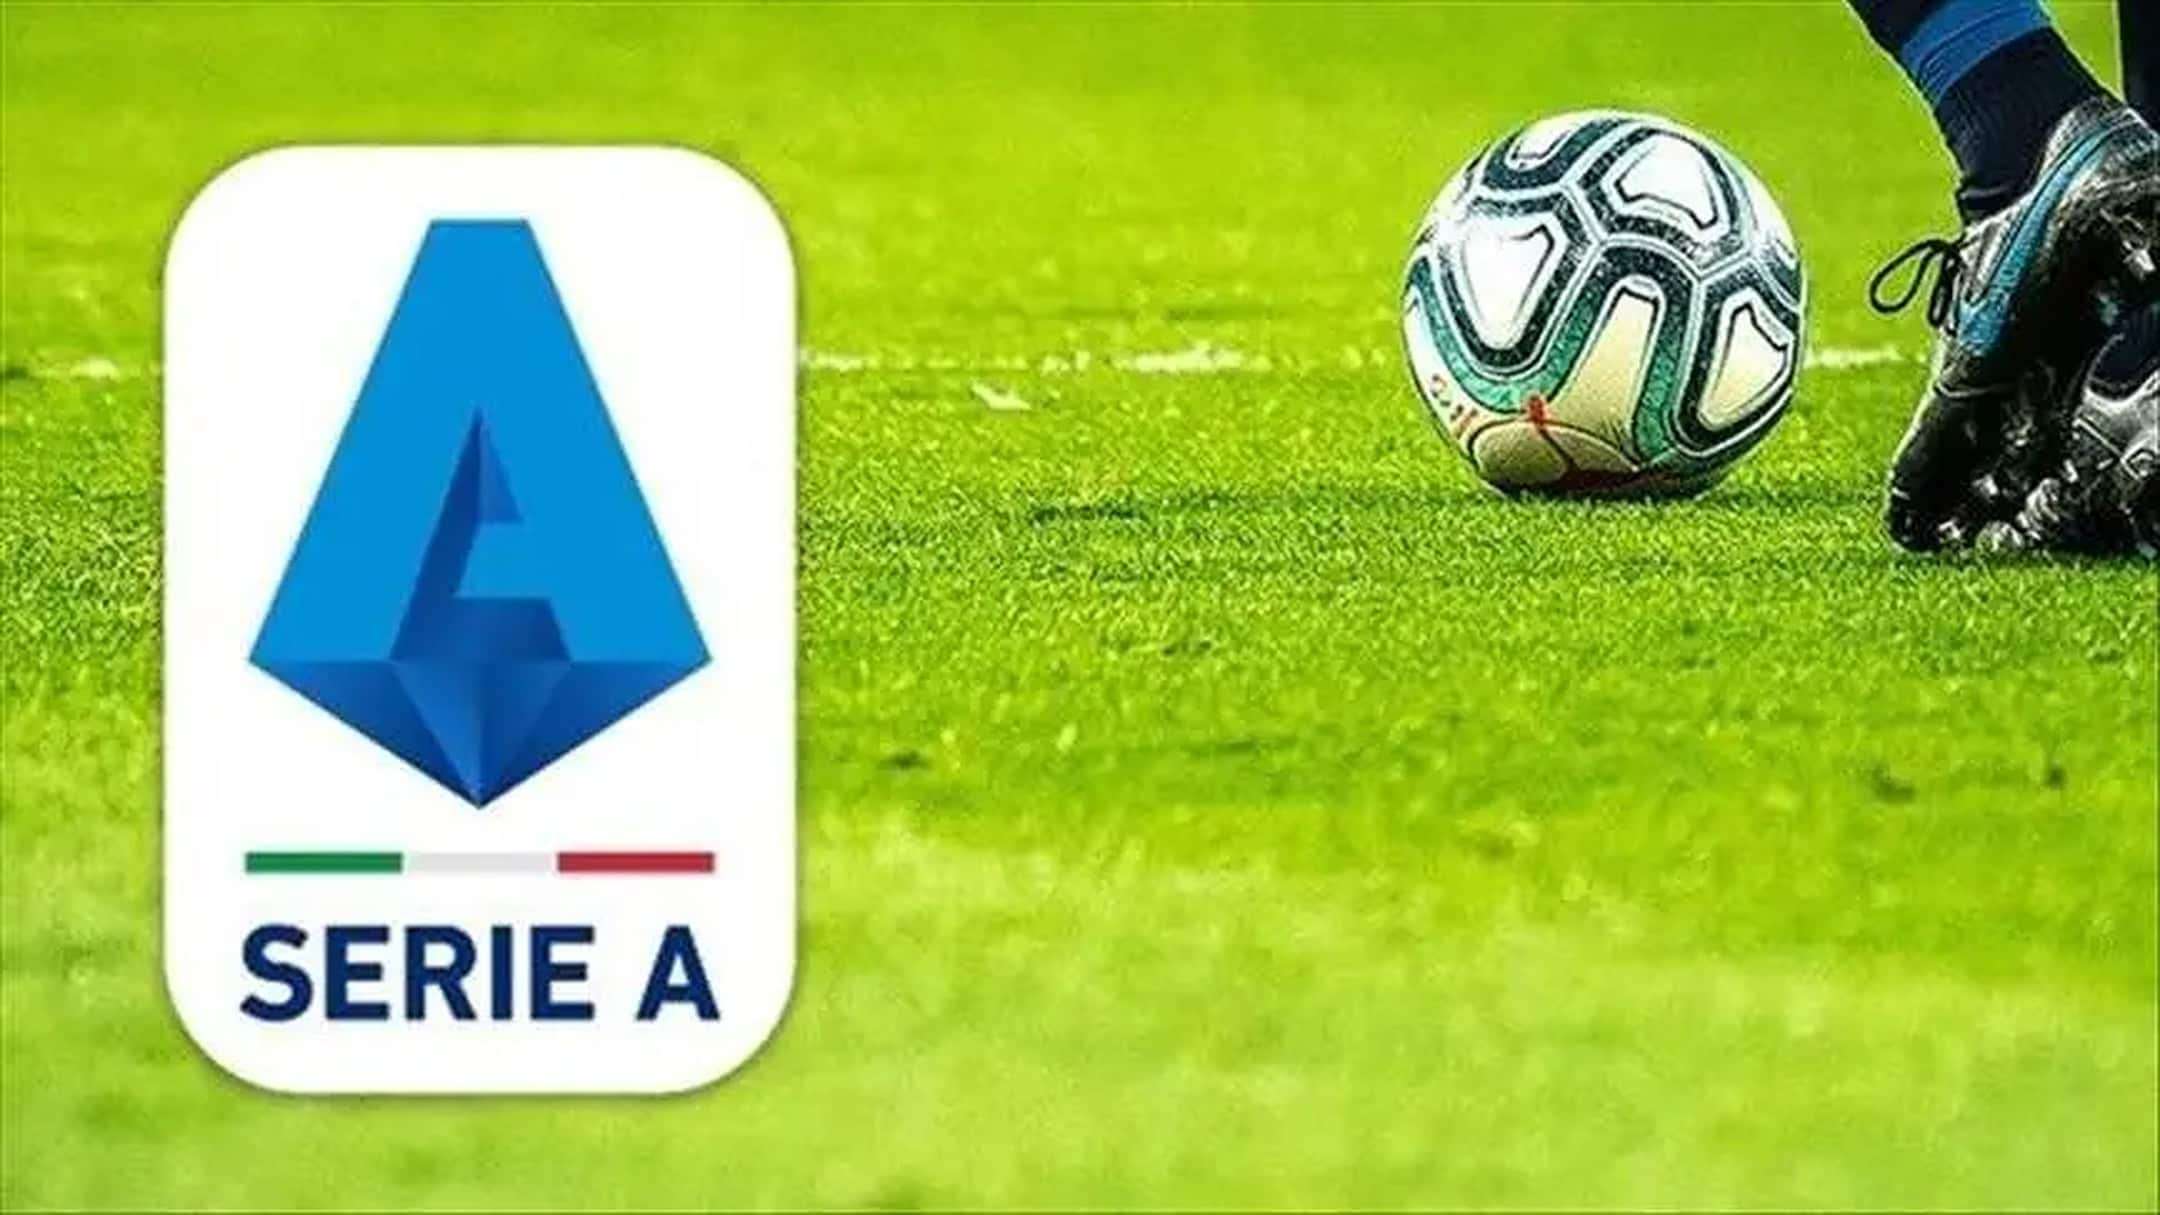 Lega Serie A calcio logo diritti TV